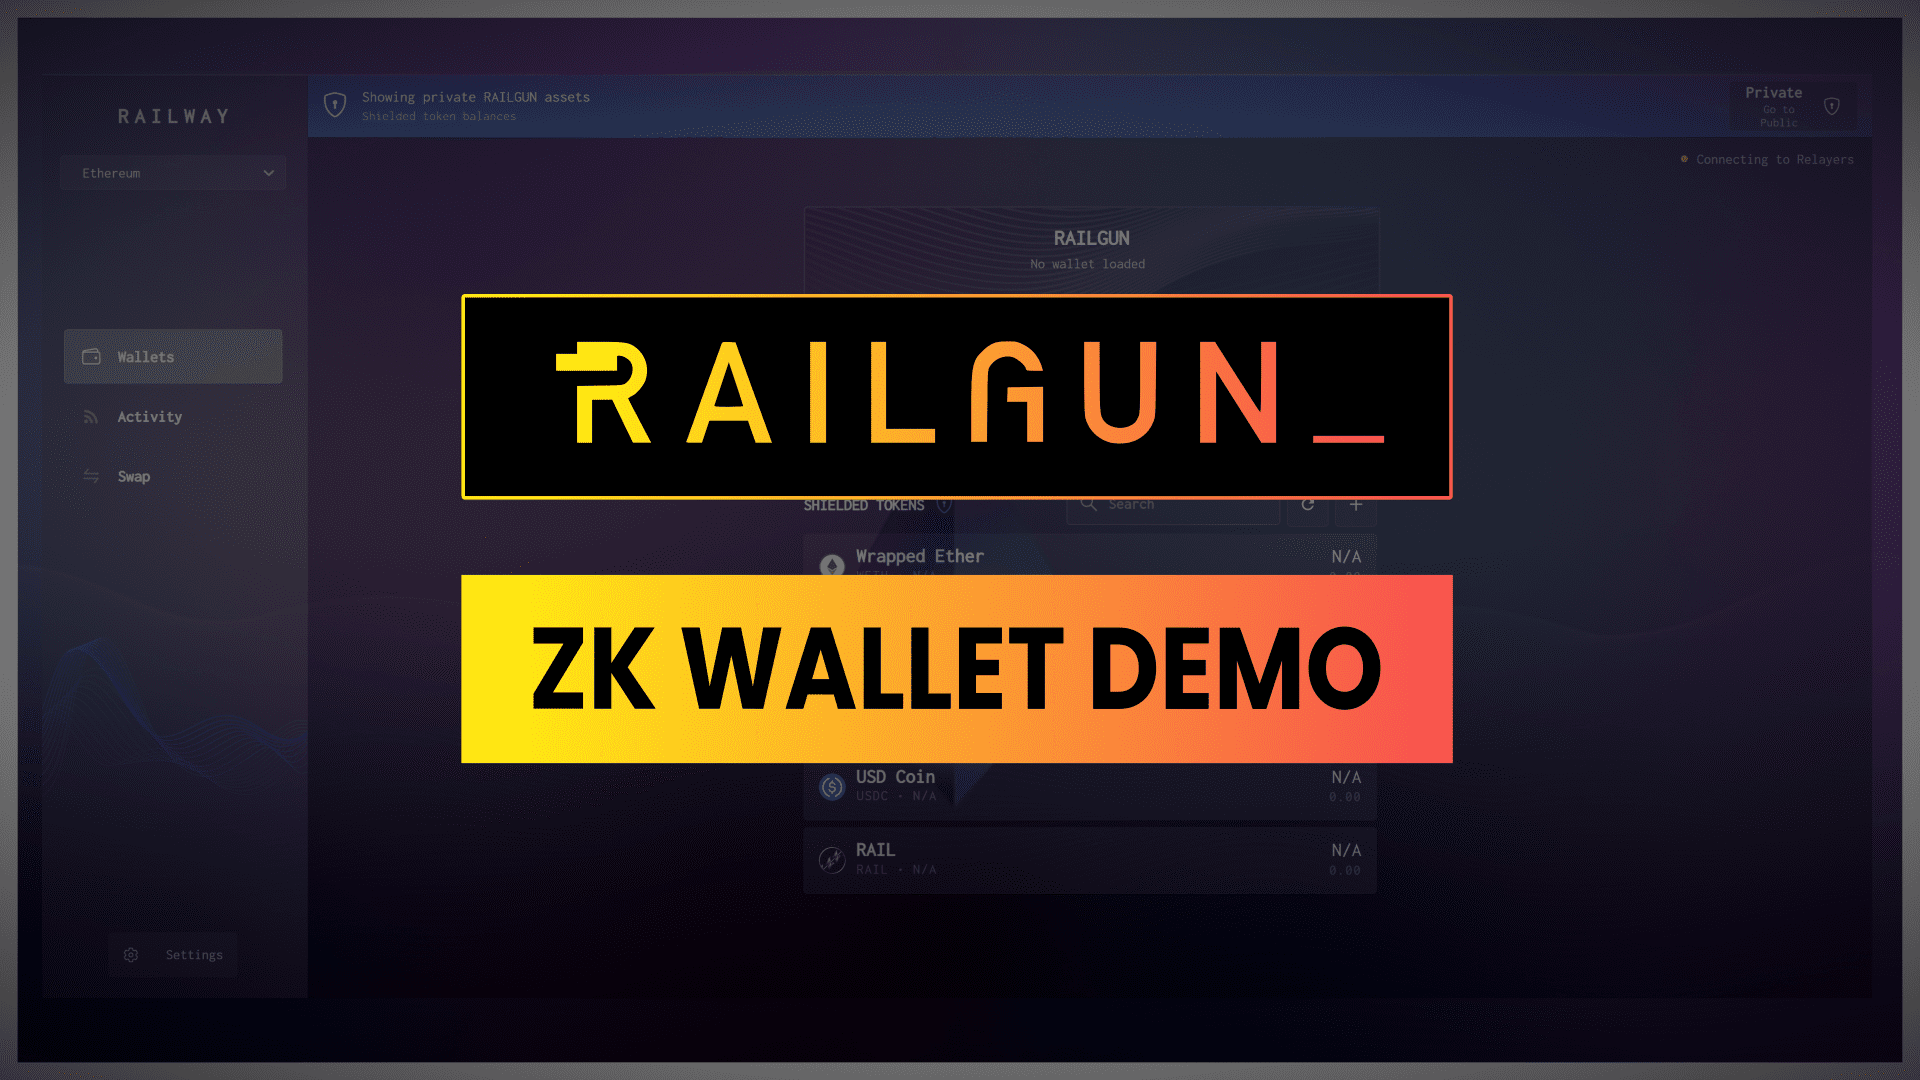 railgun 2.0 zk wallet